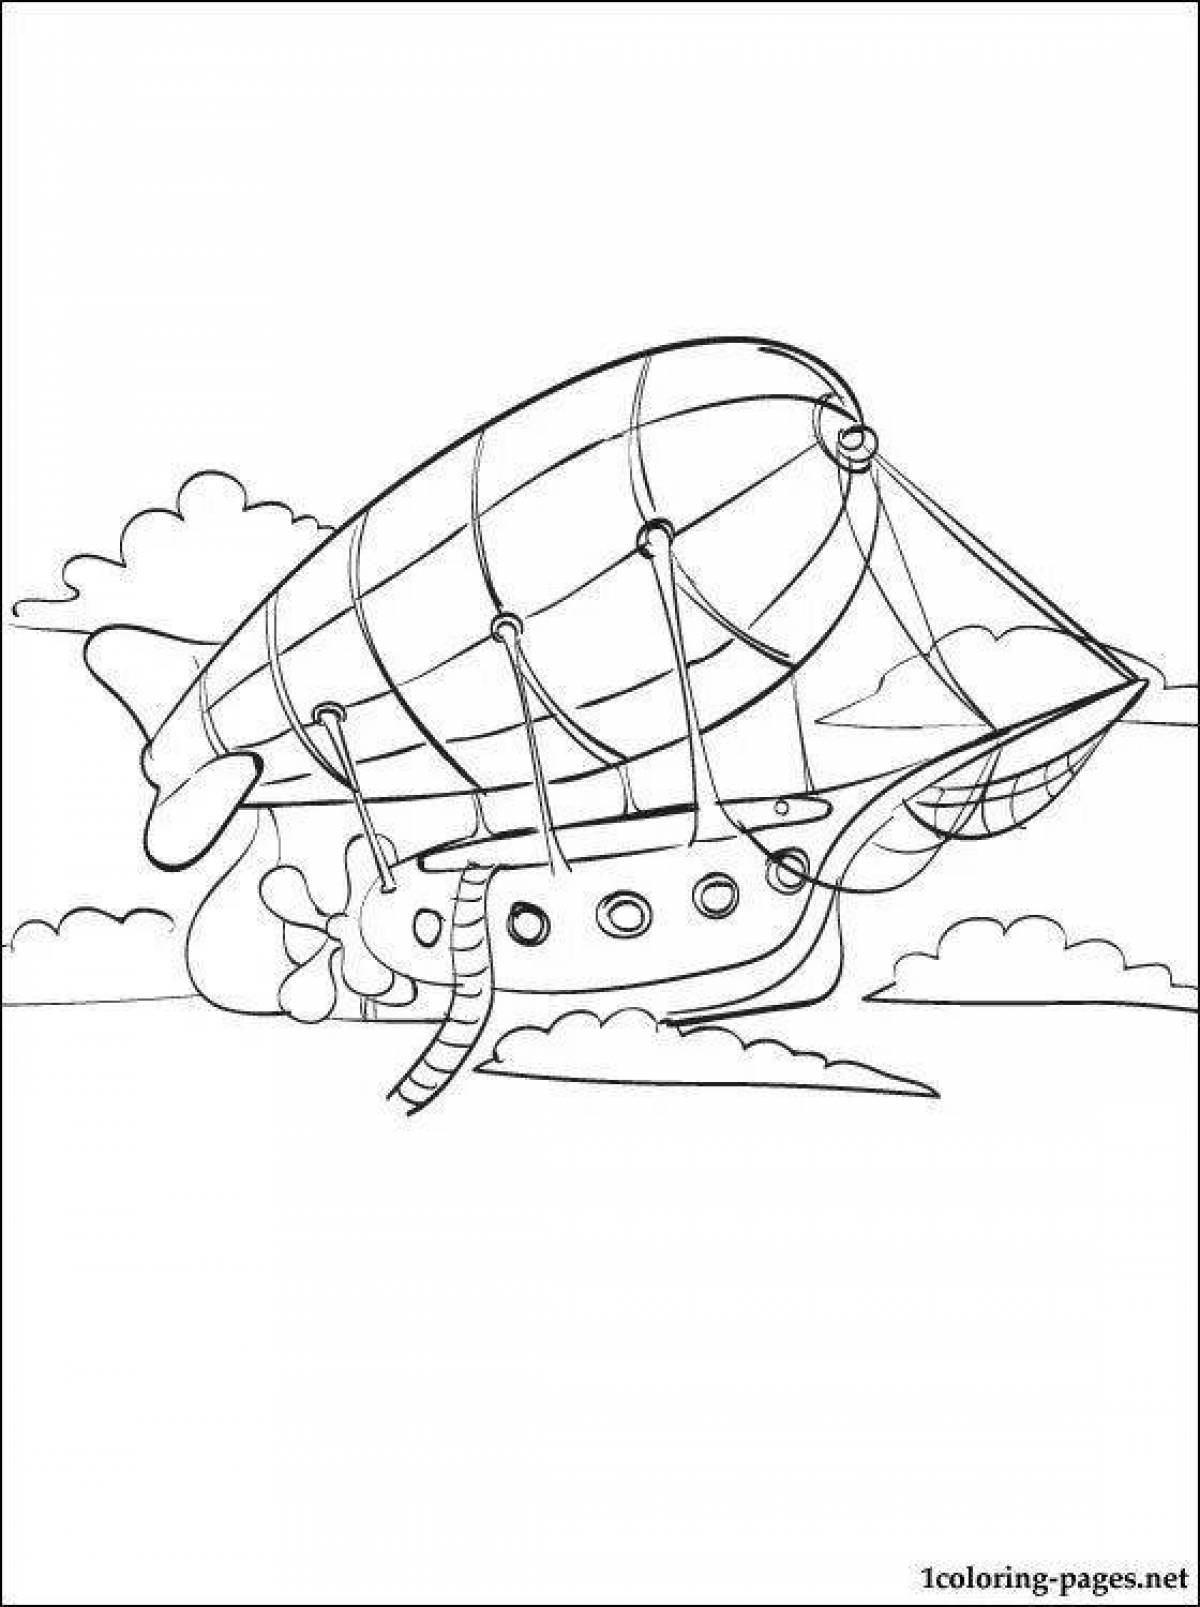 Royal airship coloring page